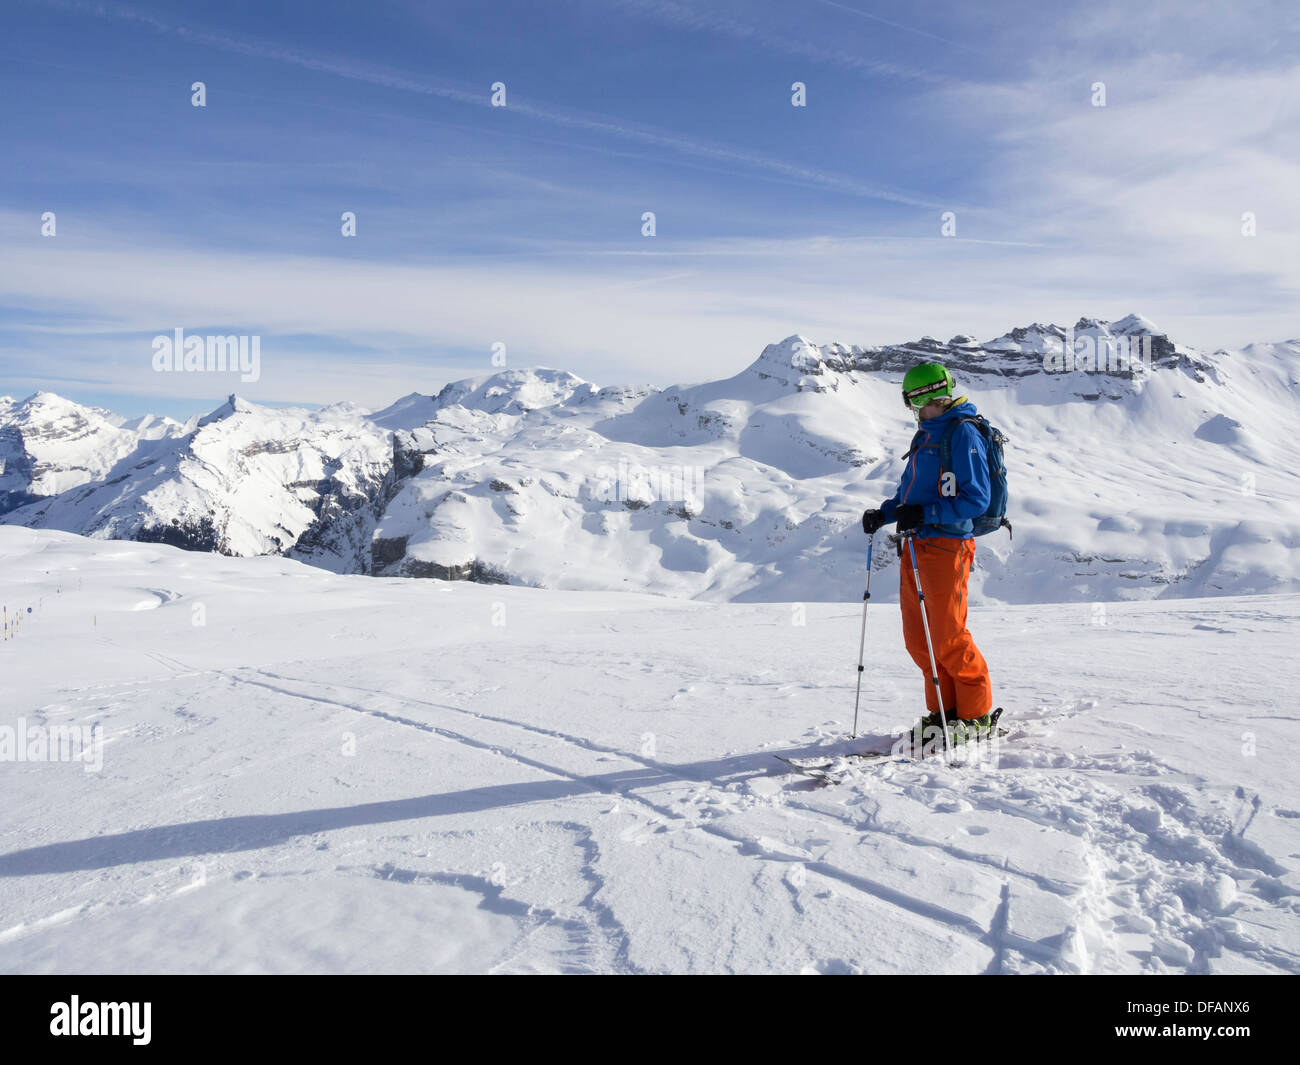 Male skier ski dans le domaine skiable du Grand Massif à la recherche de montagnes aux sommets enneigés des Alpes françaises. Flaine, Rhône-Alpes, France Banque D'Images